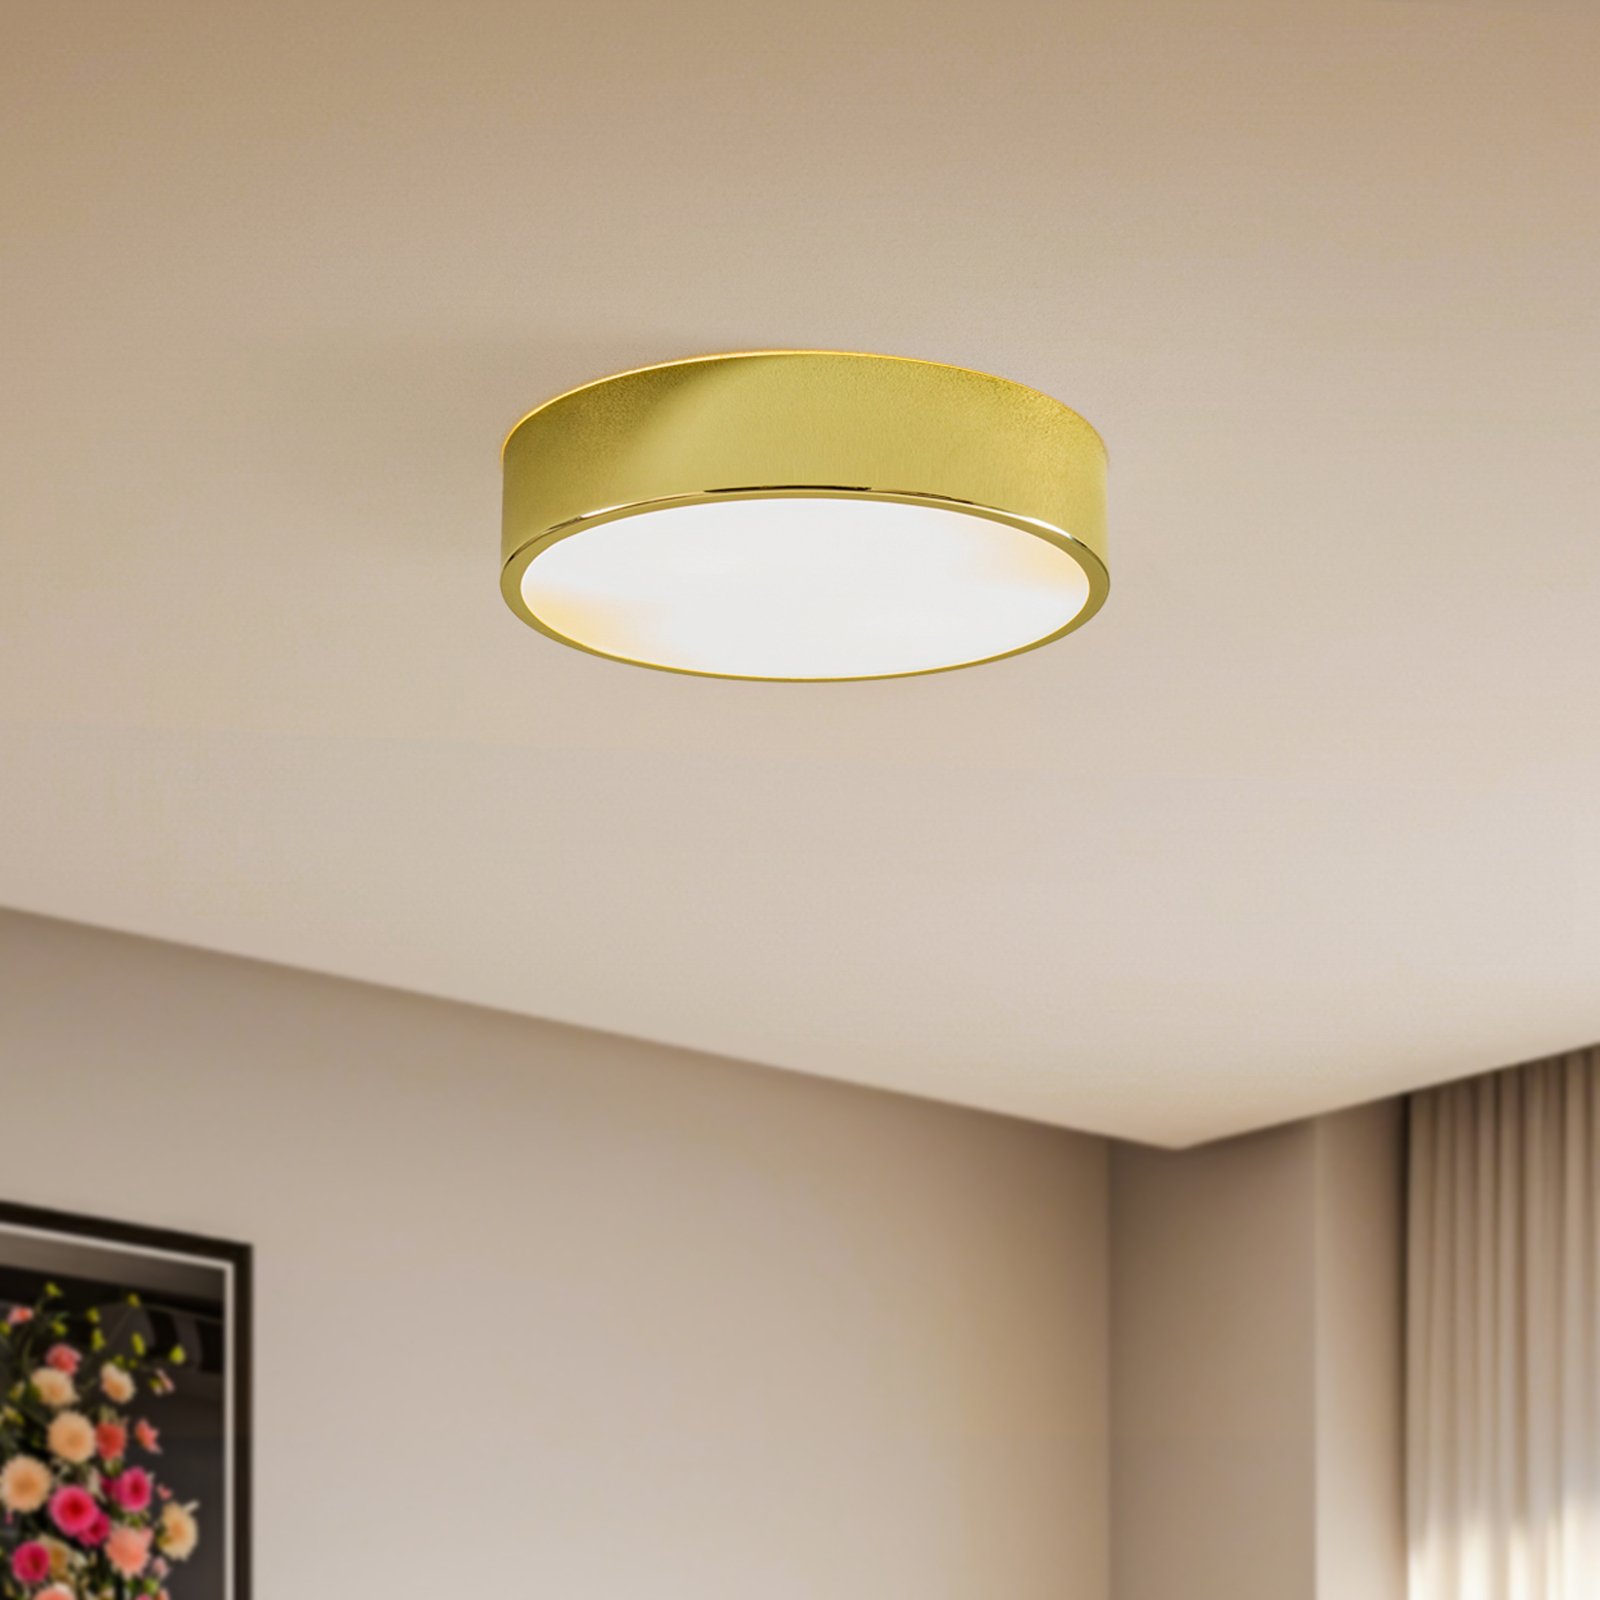 Kimban ceiling light made of metal, Ø 36 cm, gold